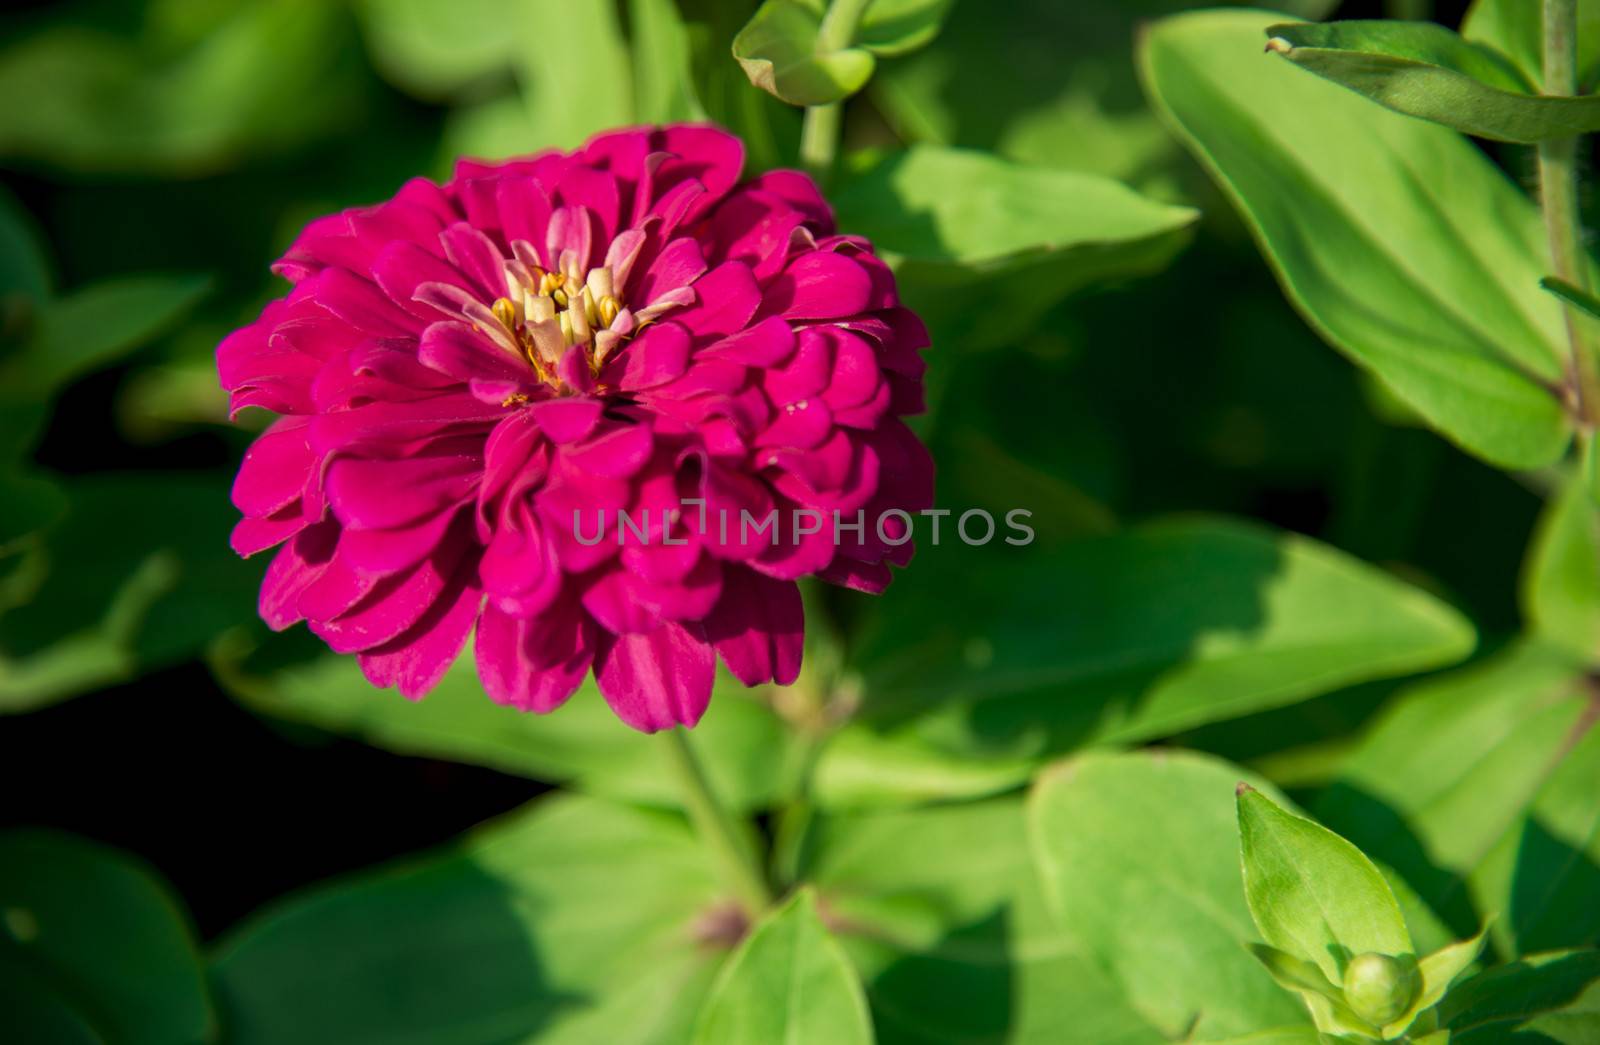 A pink gerbera flower in the garden1 by gjeerawut